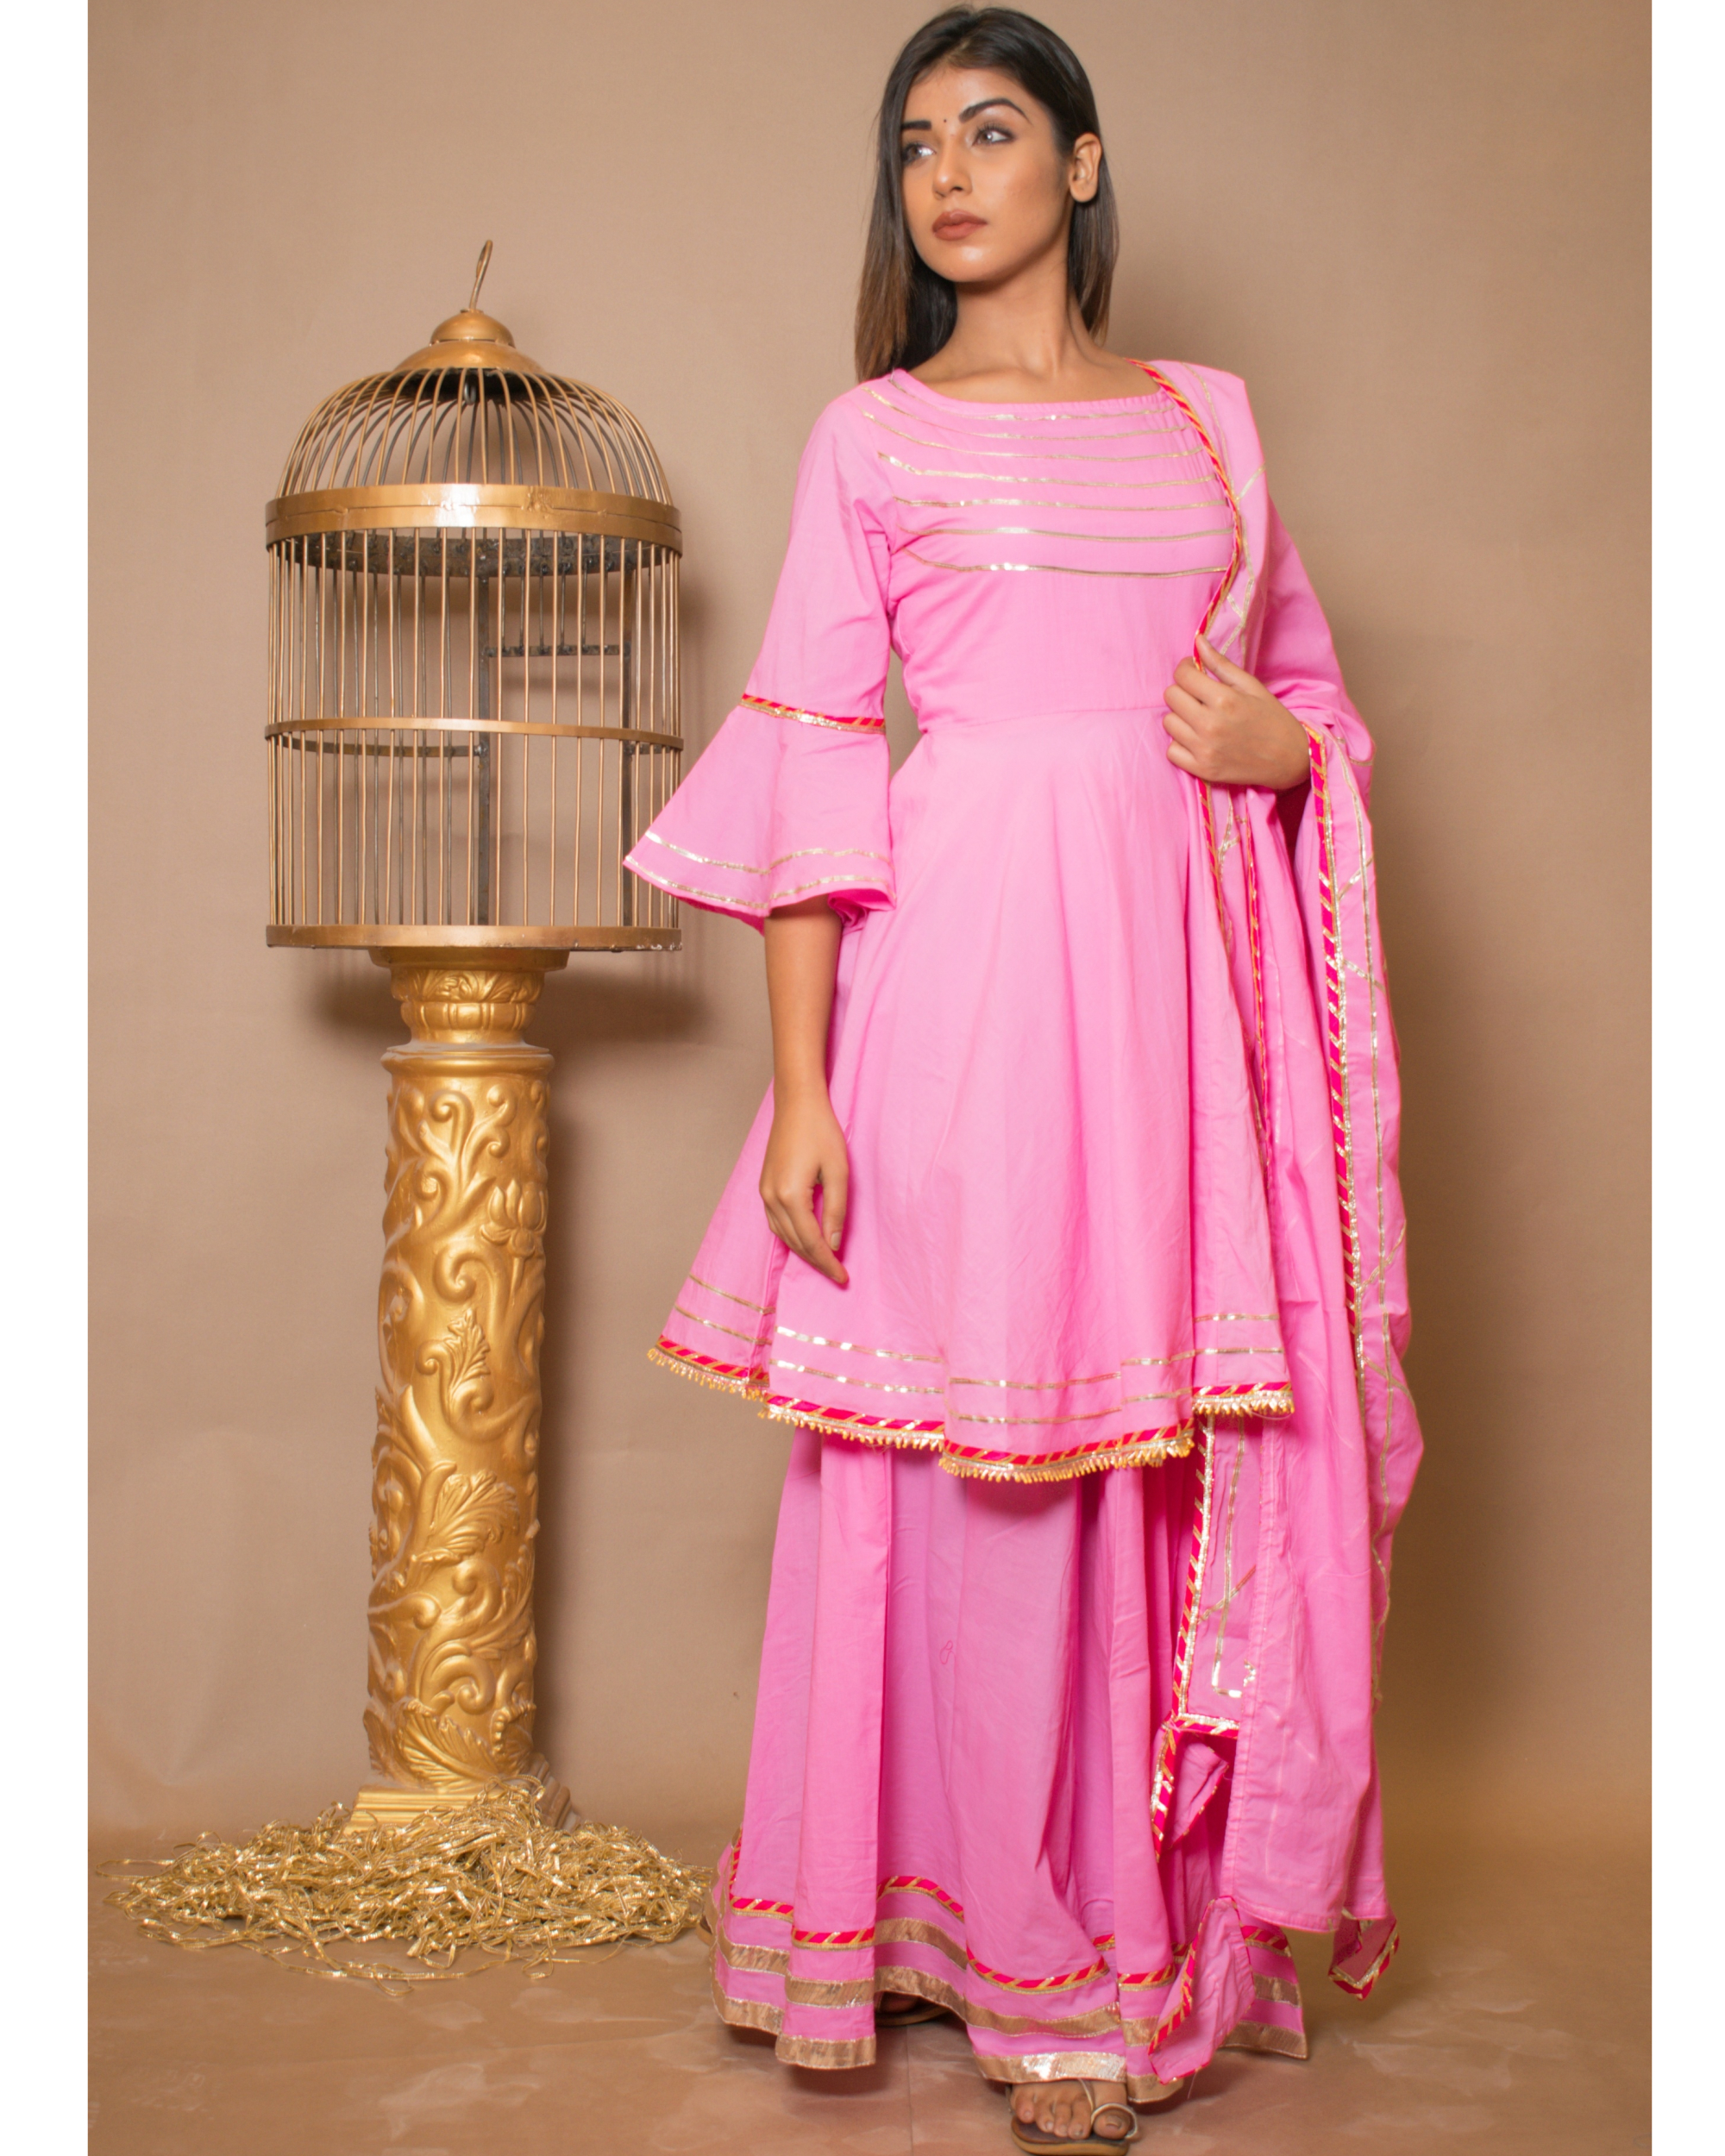 Baby pink kurta and skirt with dupatta - set of three